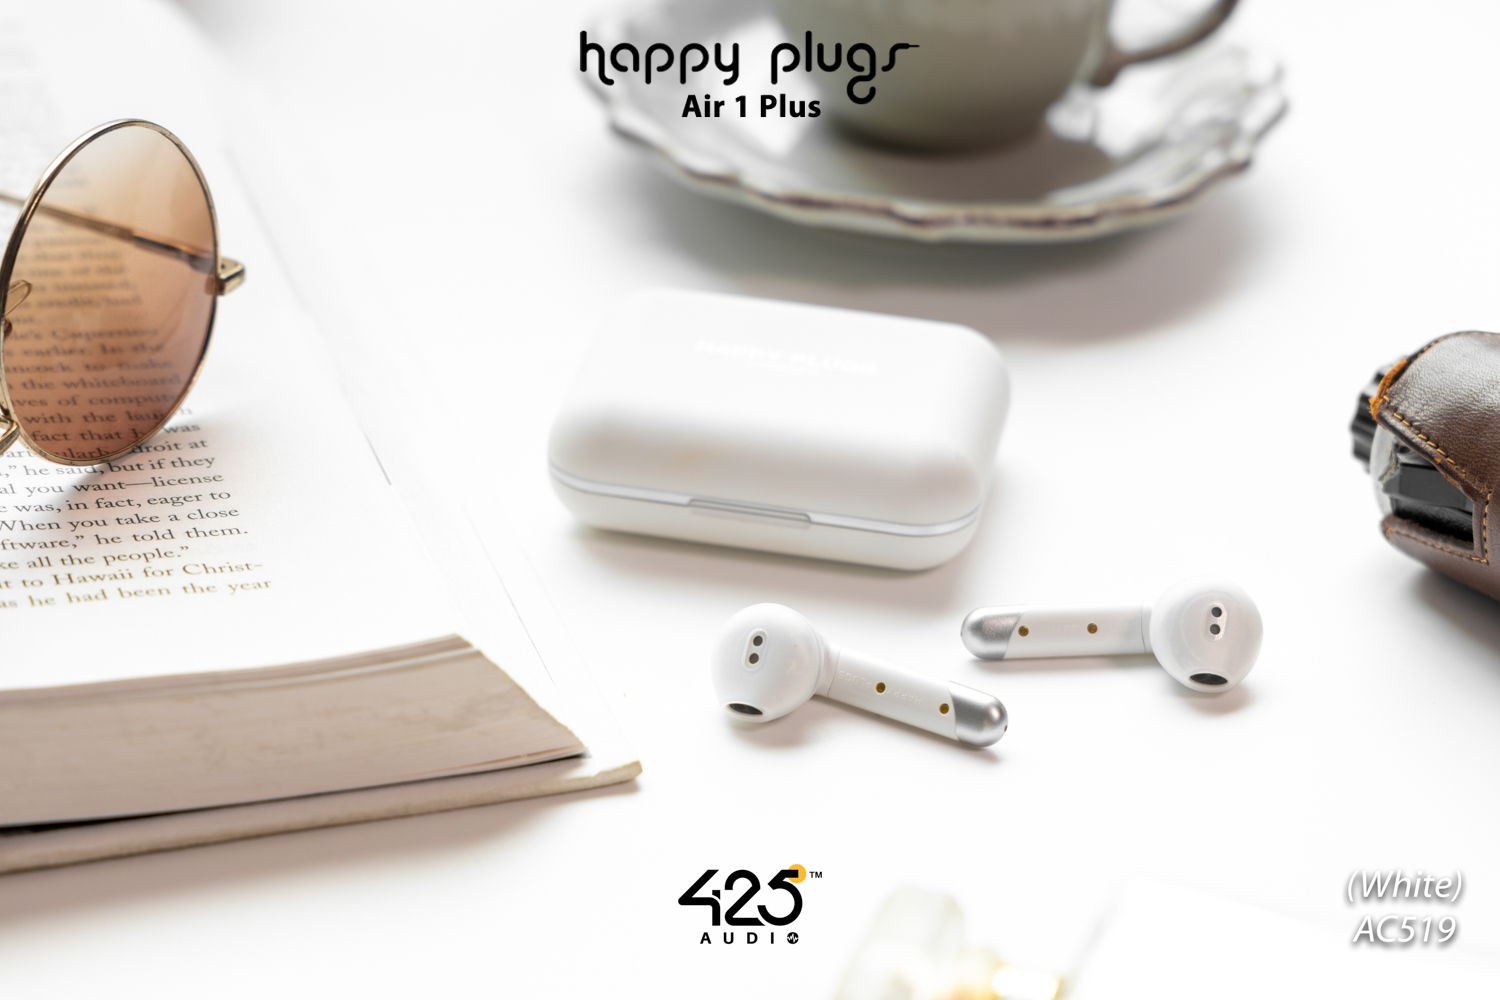 happyplugs_air1_plus